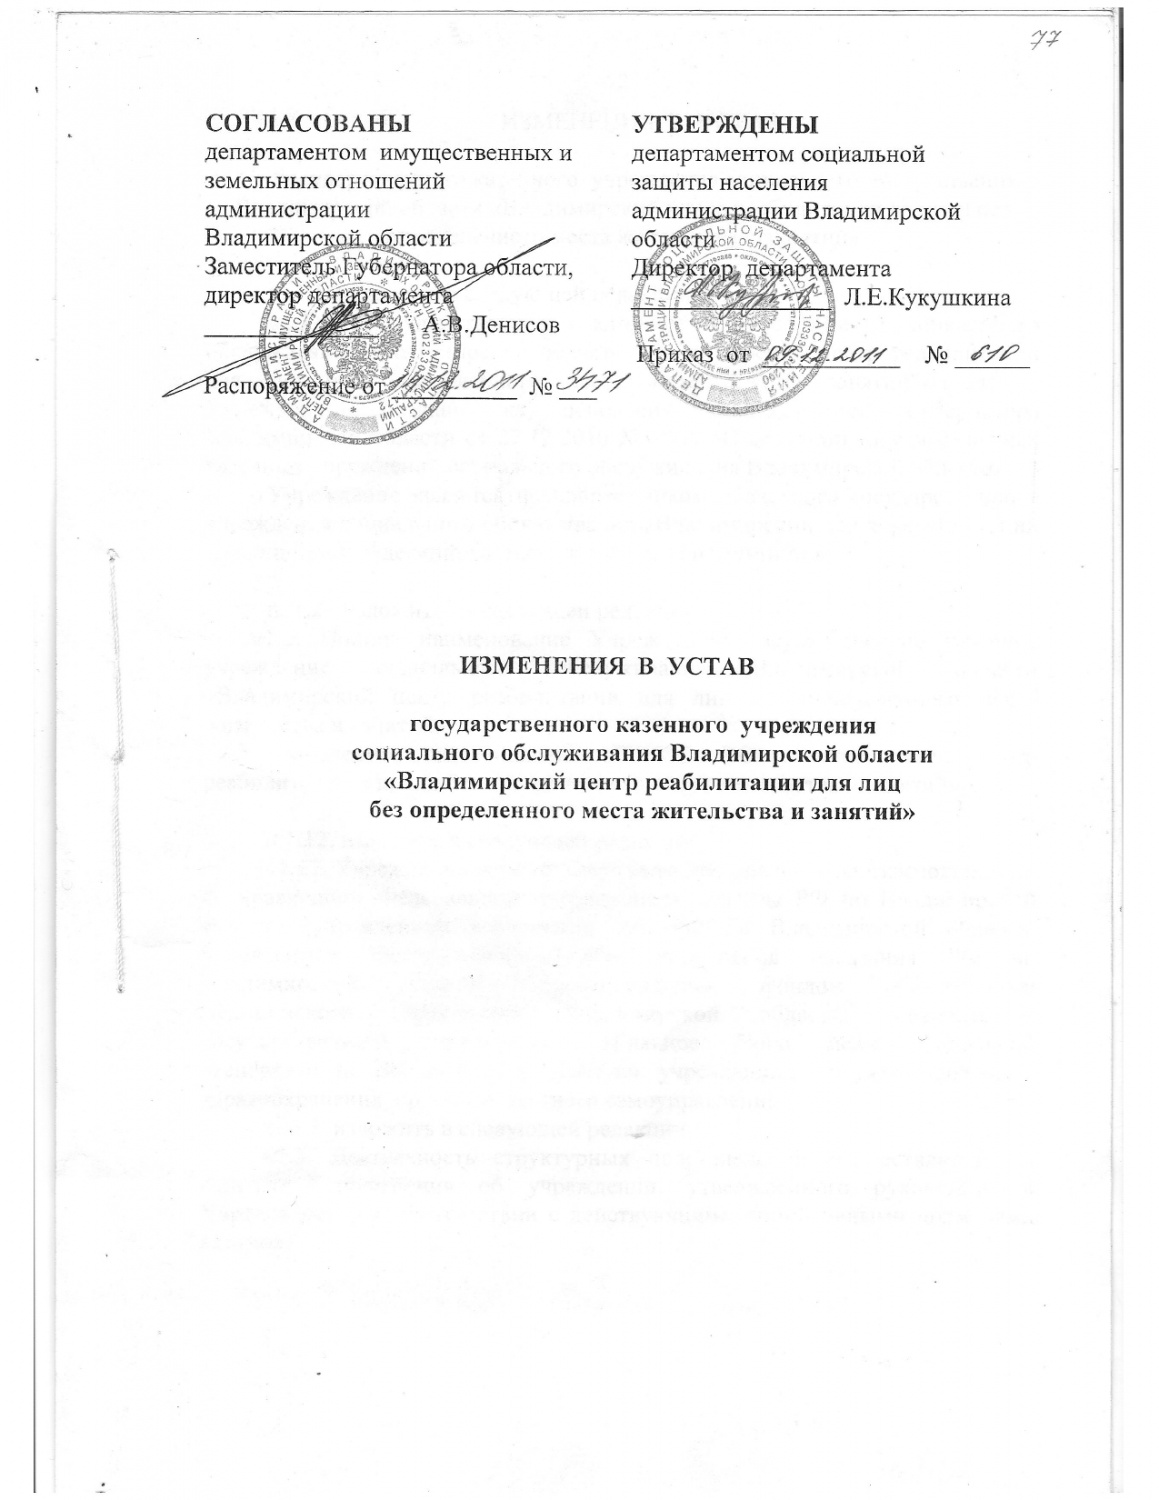 титульник изменений в устав 2011_page-0001.jpg